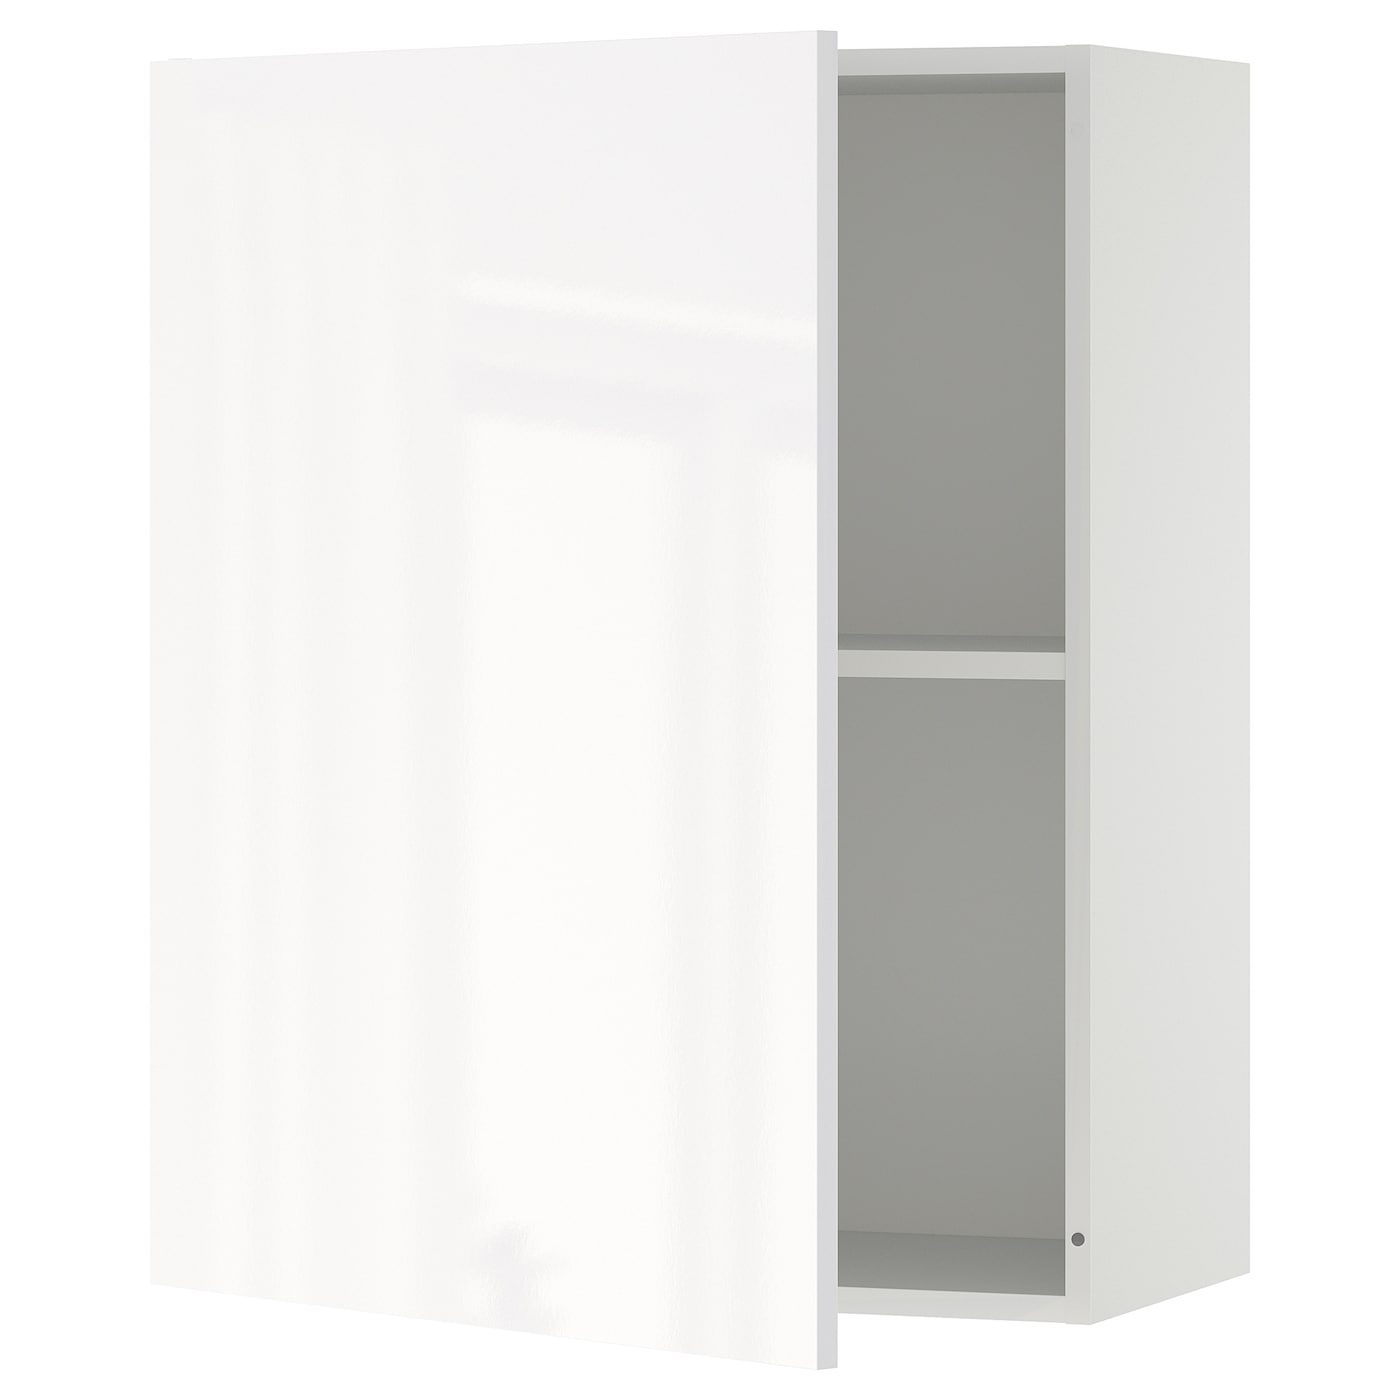 Навесной шкаф с дверцами - IKEA KNOXHULT/КНОКХУЛЬТ ИКЕА, 75х31х60 см, белый глянцевый